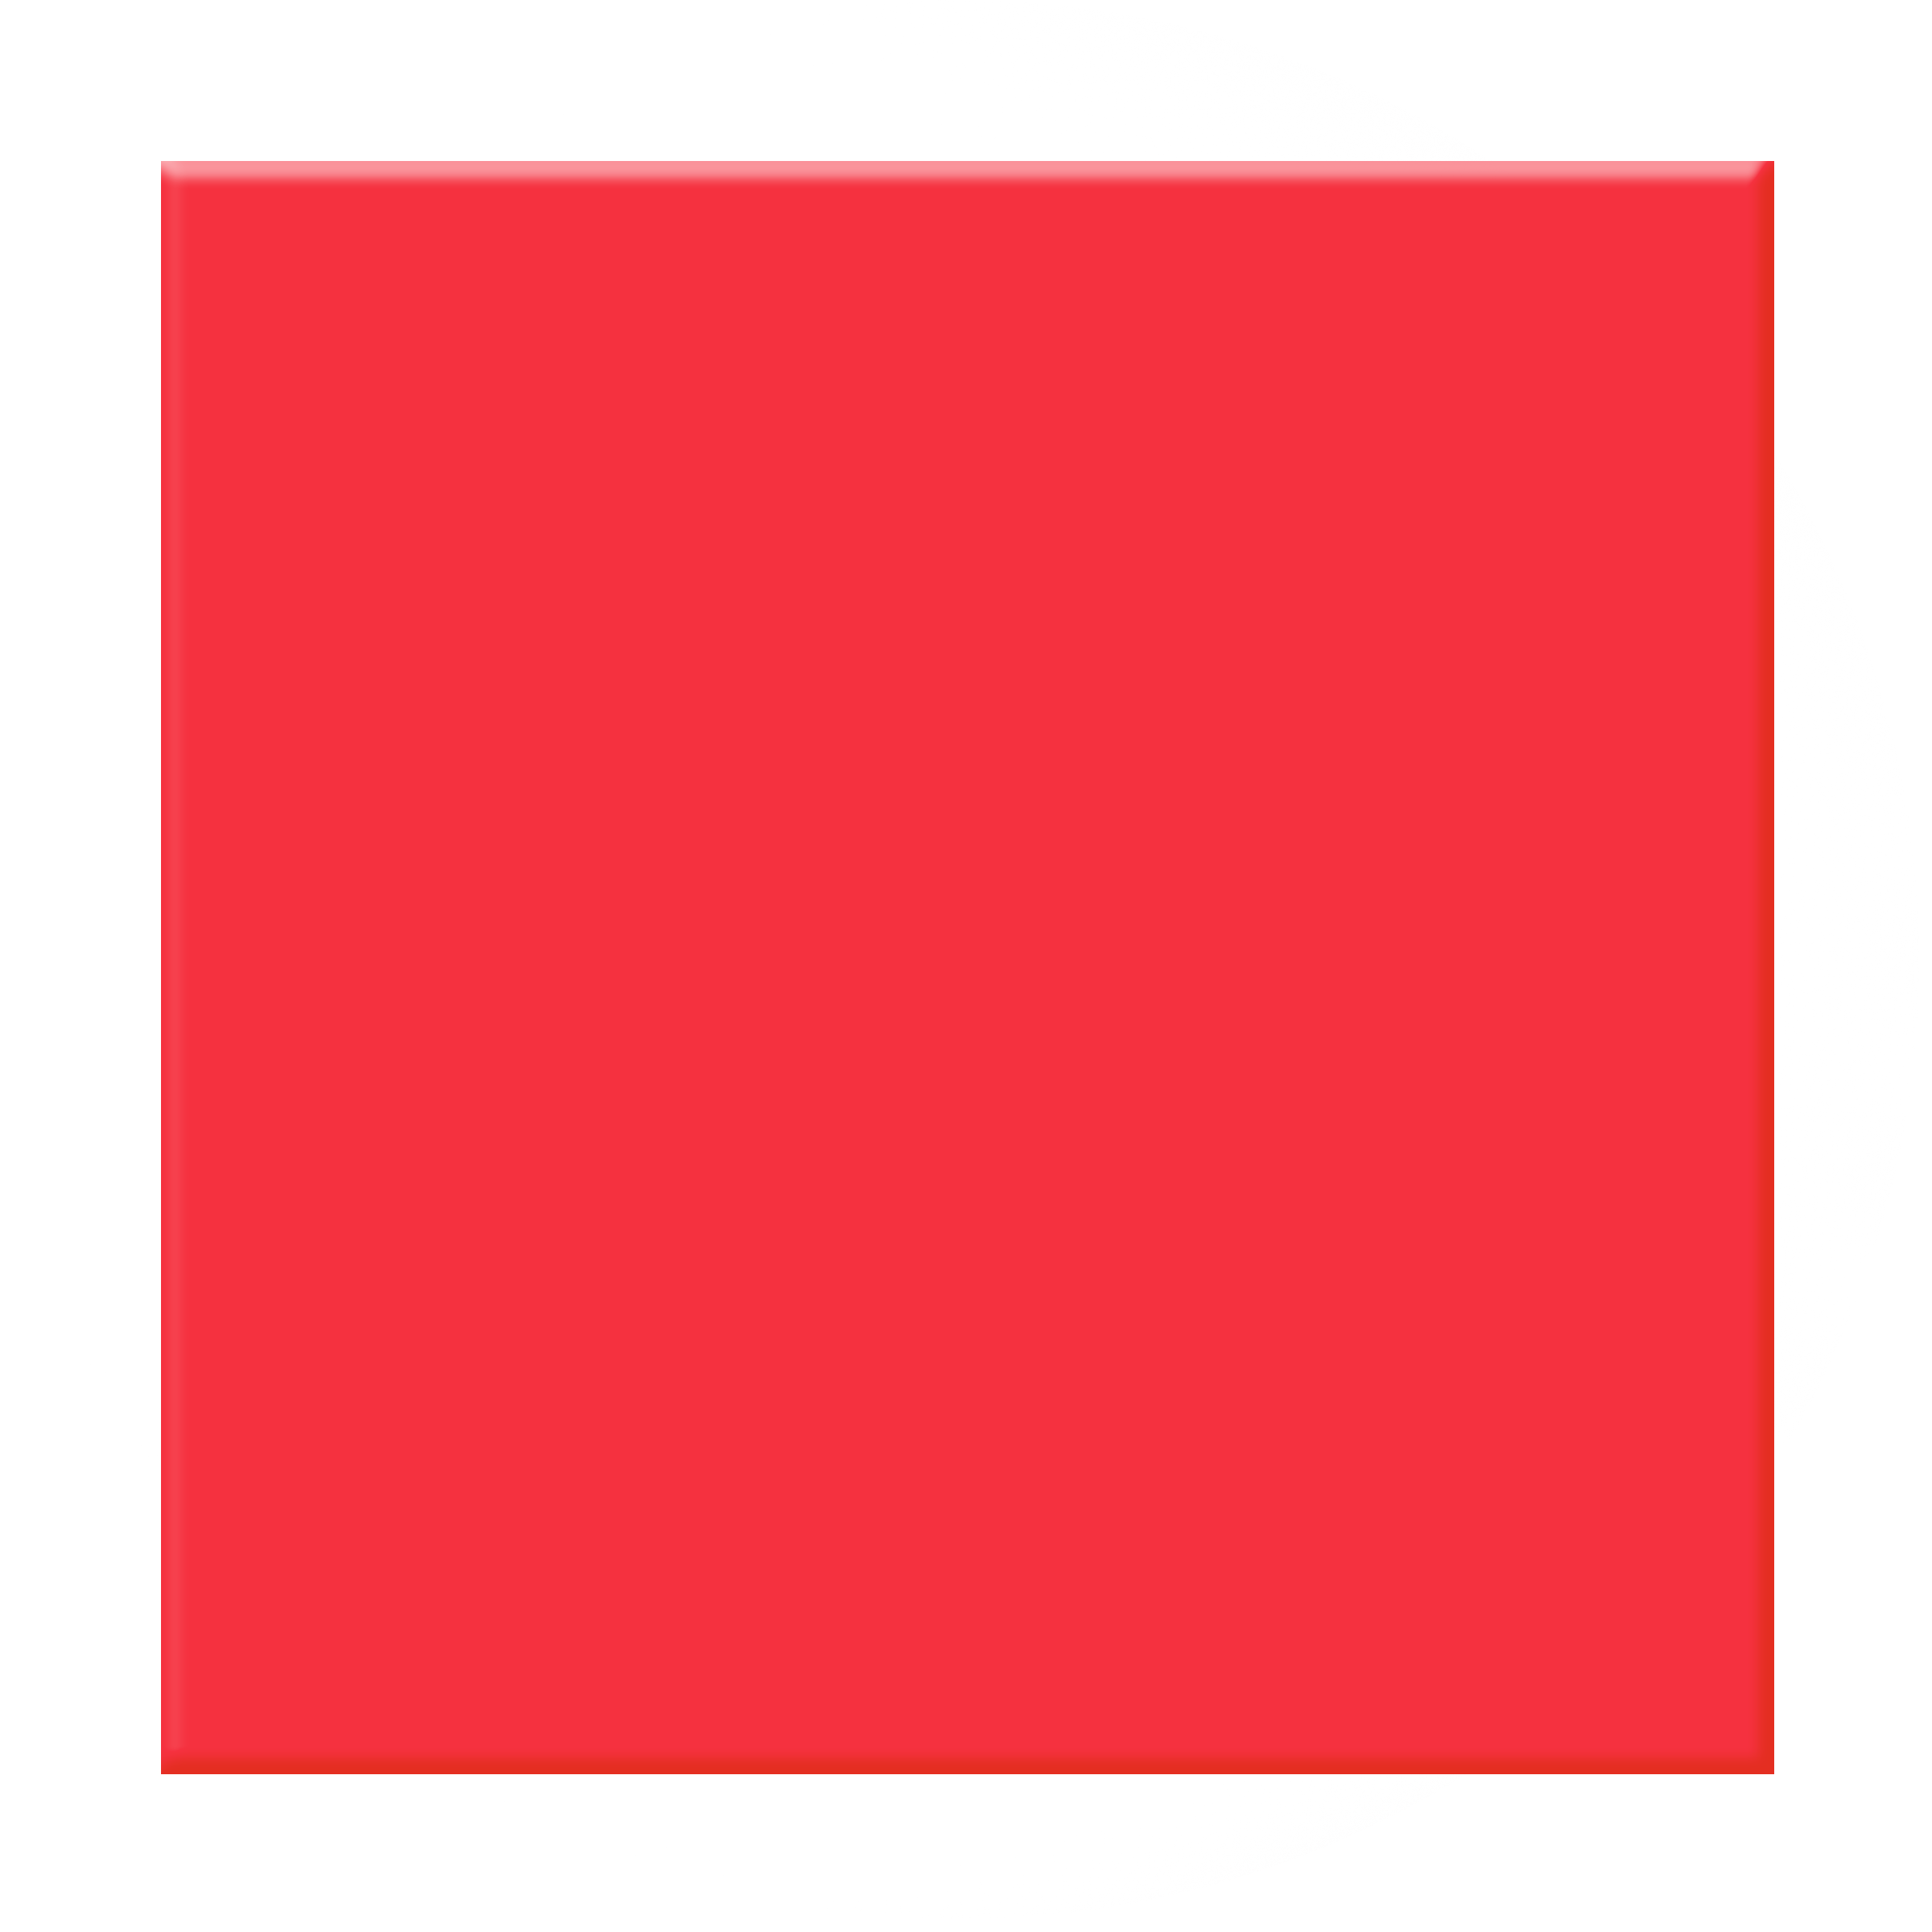 دانلود عکس با کیفیت بالا رایگان مربع قرمز